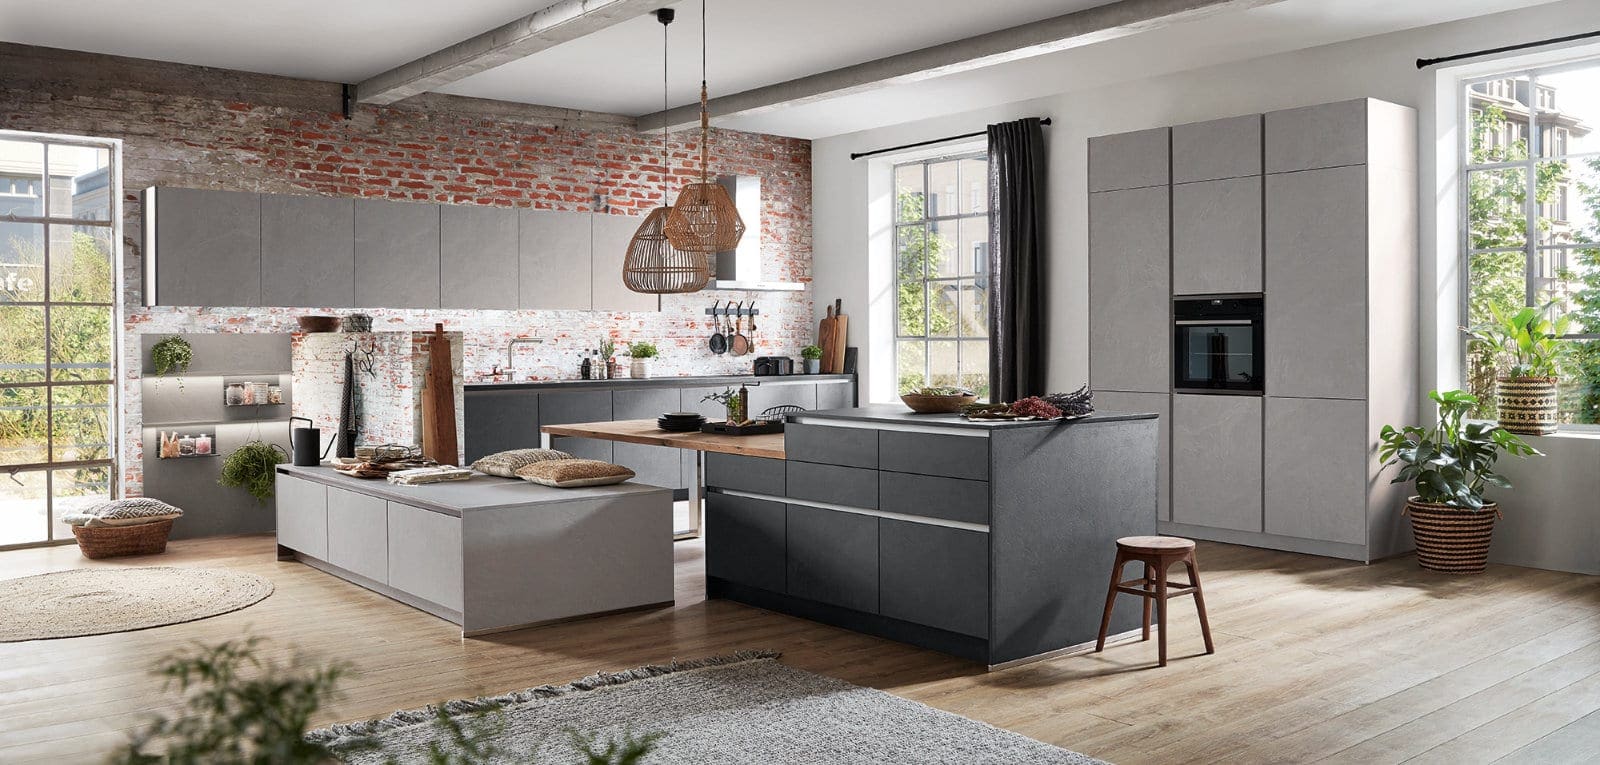 Nobilia Modern Concrete Handleless Open Plan Kitchen With Island 2021 1 | MHK Kitchen Experts